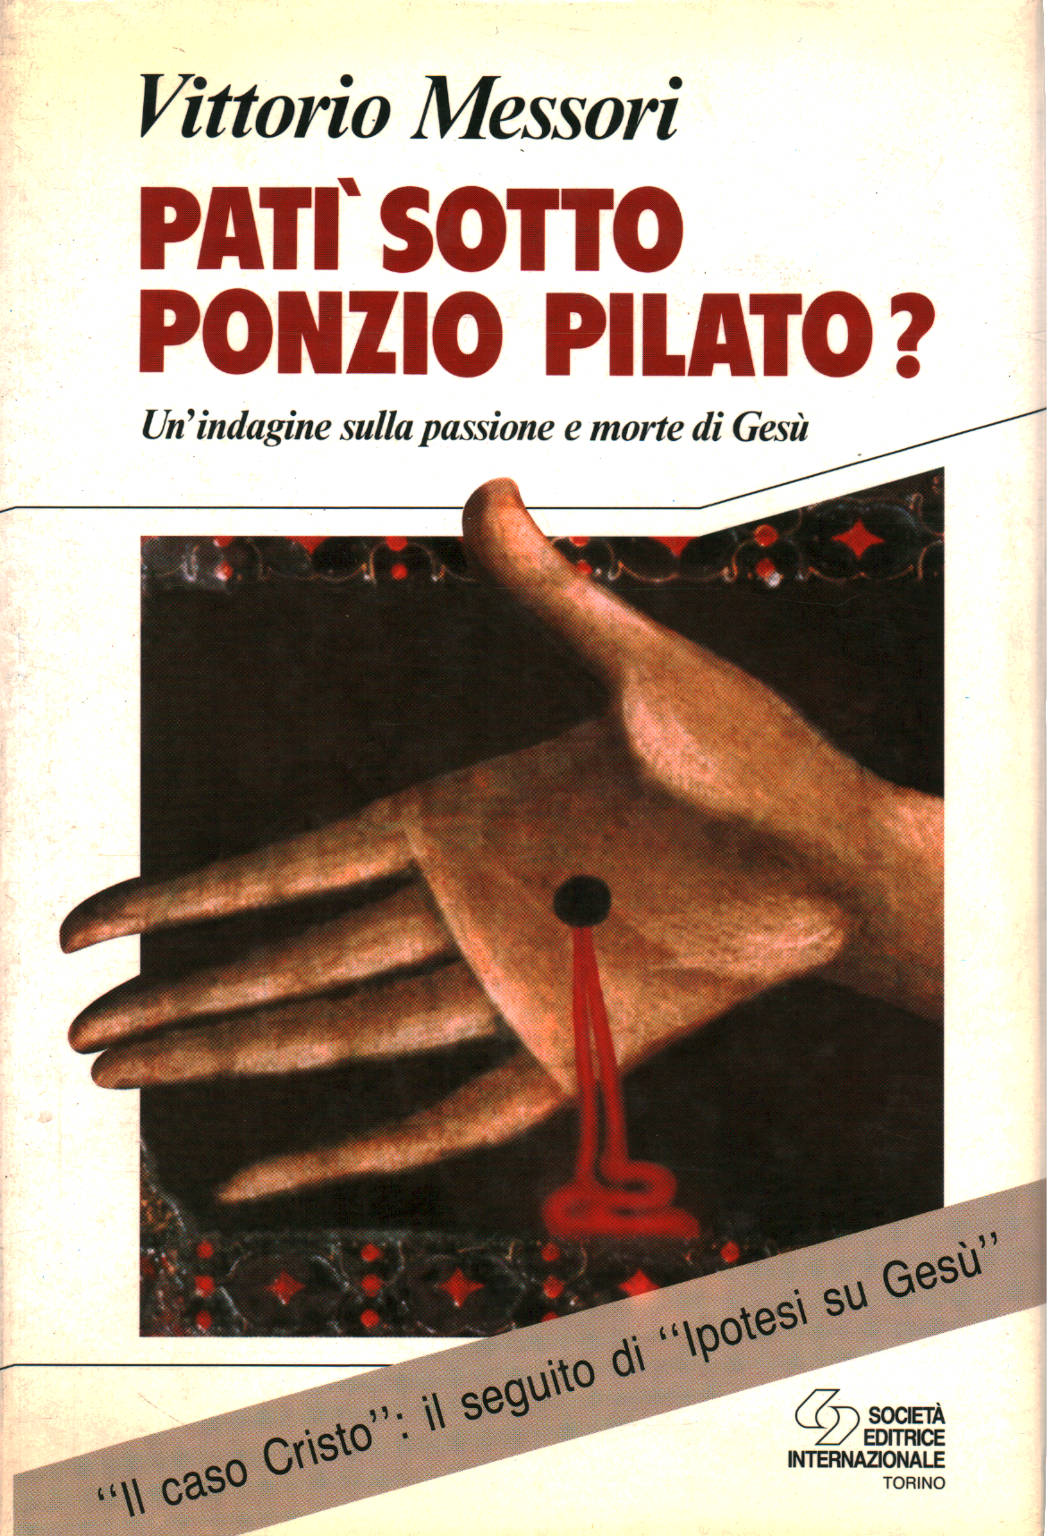 ¿Sufrió bajo Poncio Pilato?, Vittorio Messori